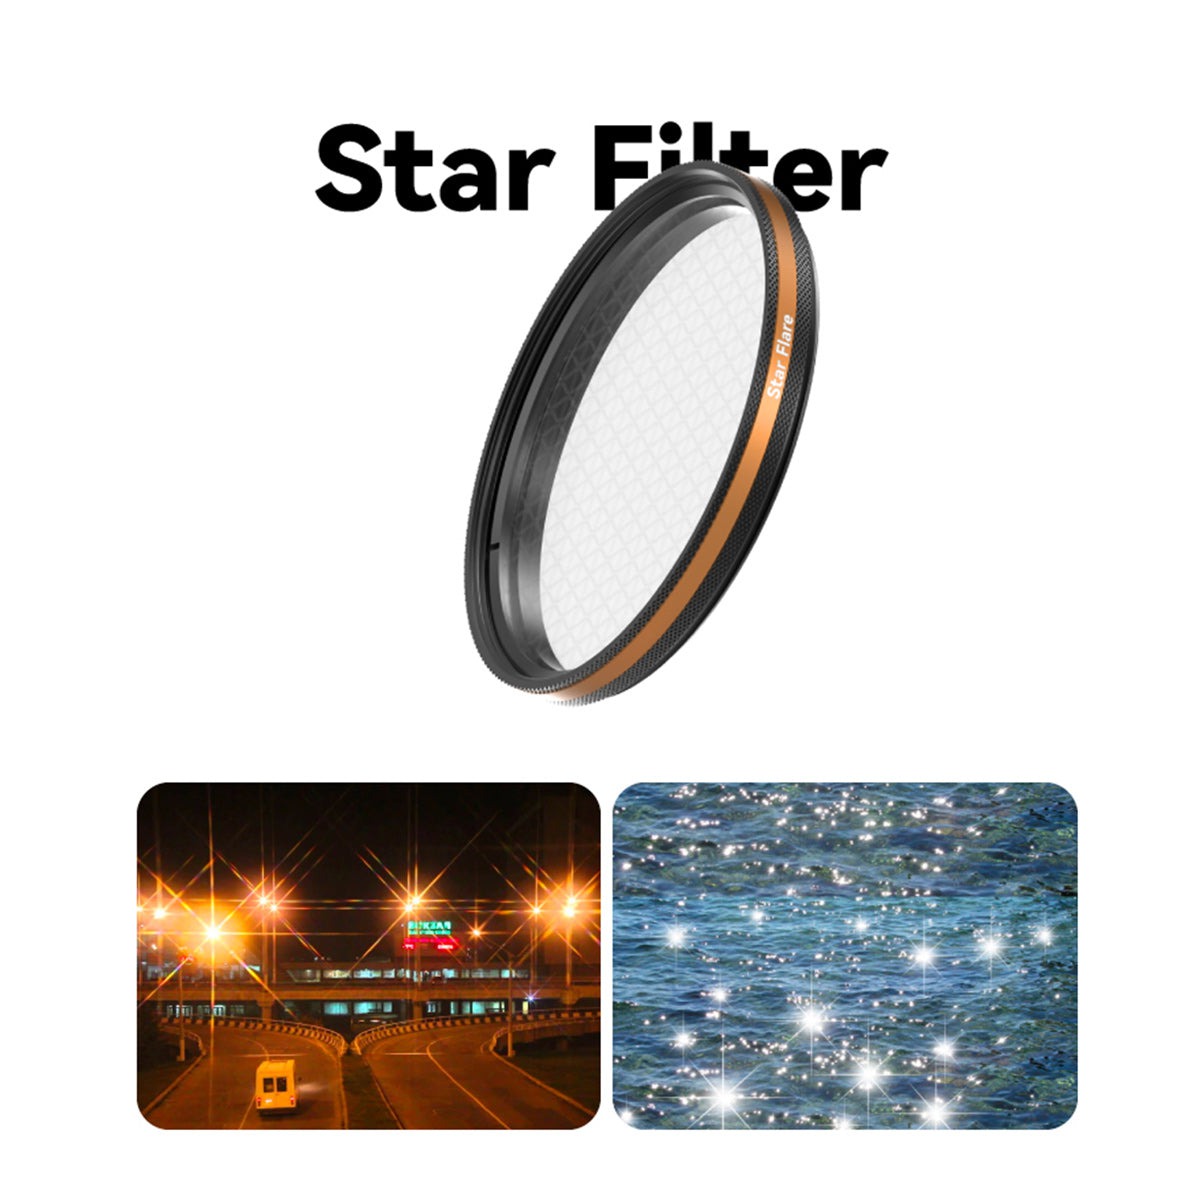 Fotorgear Star Filter